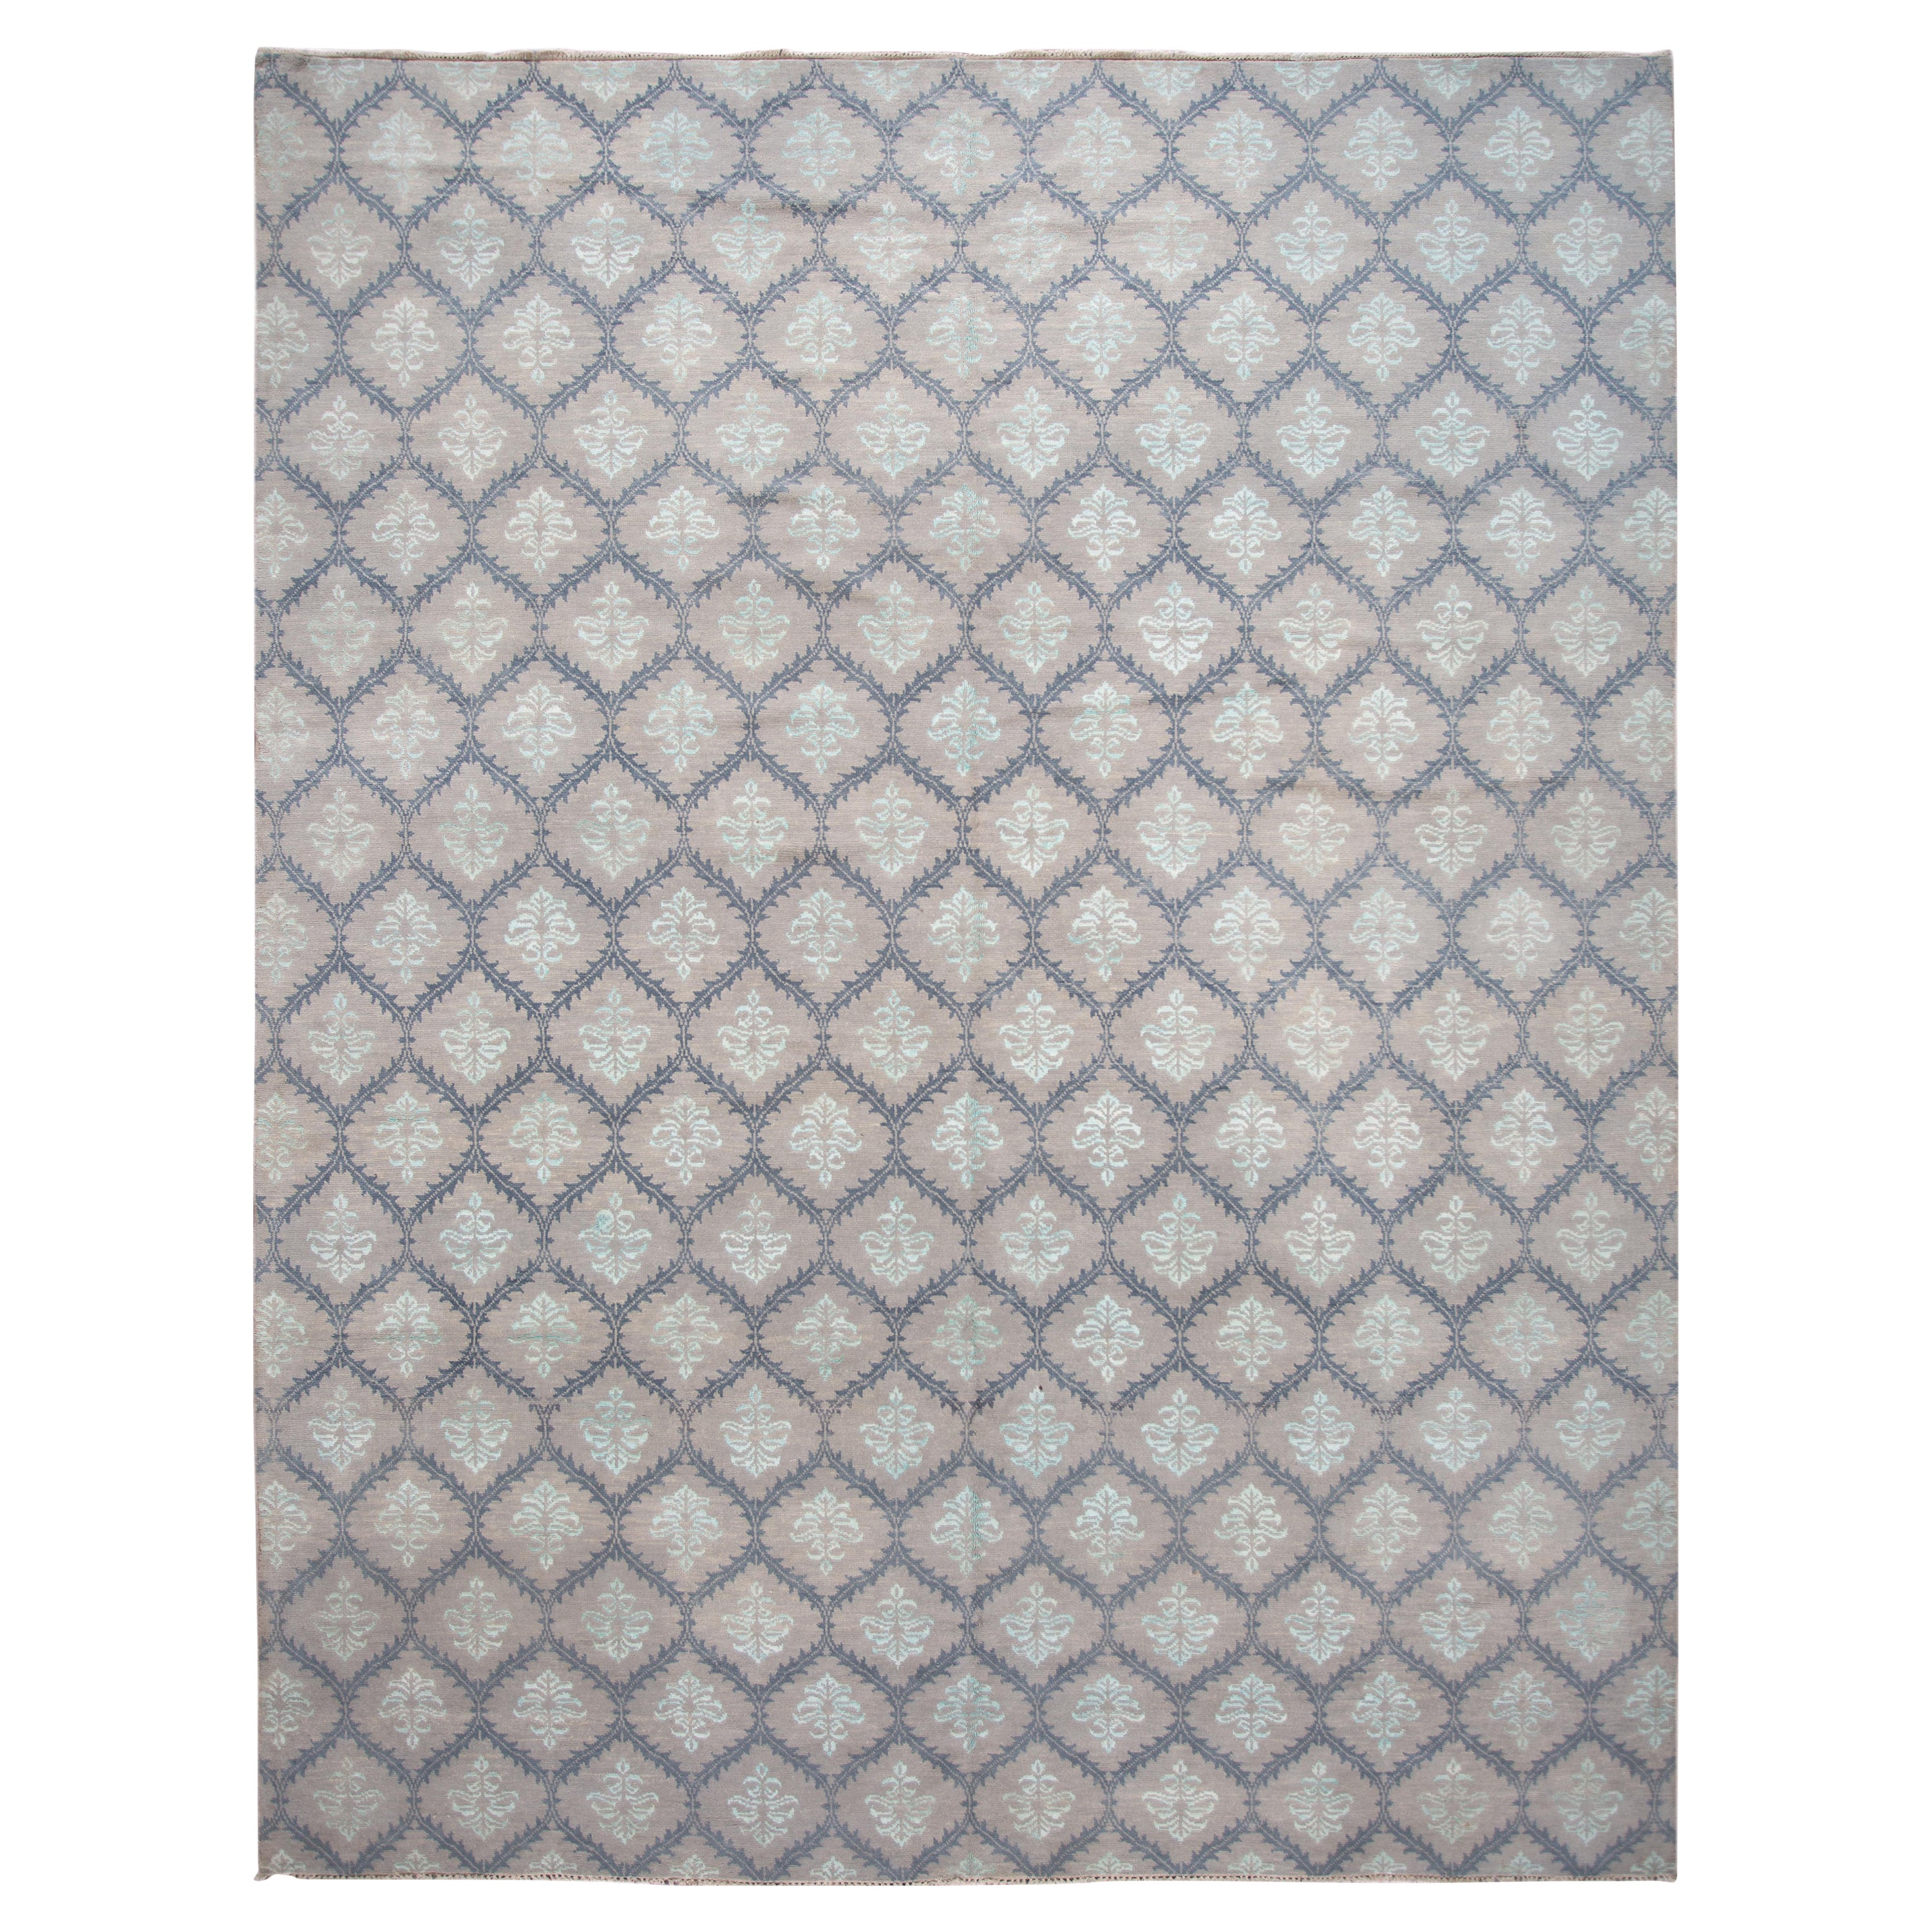 Tapis contemporain en laine et soie dans les tons gris avec un motif géométrique moderne